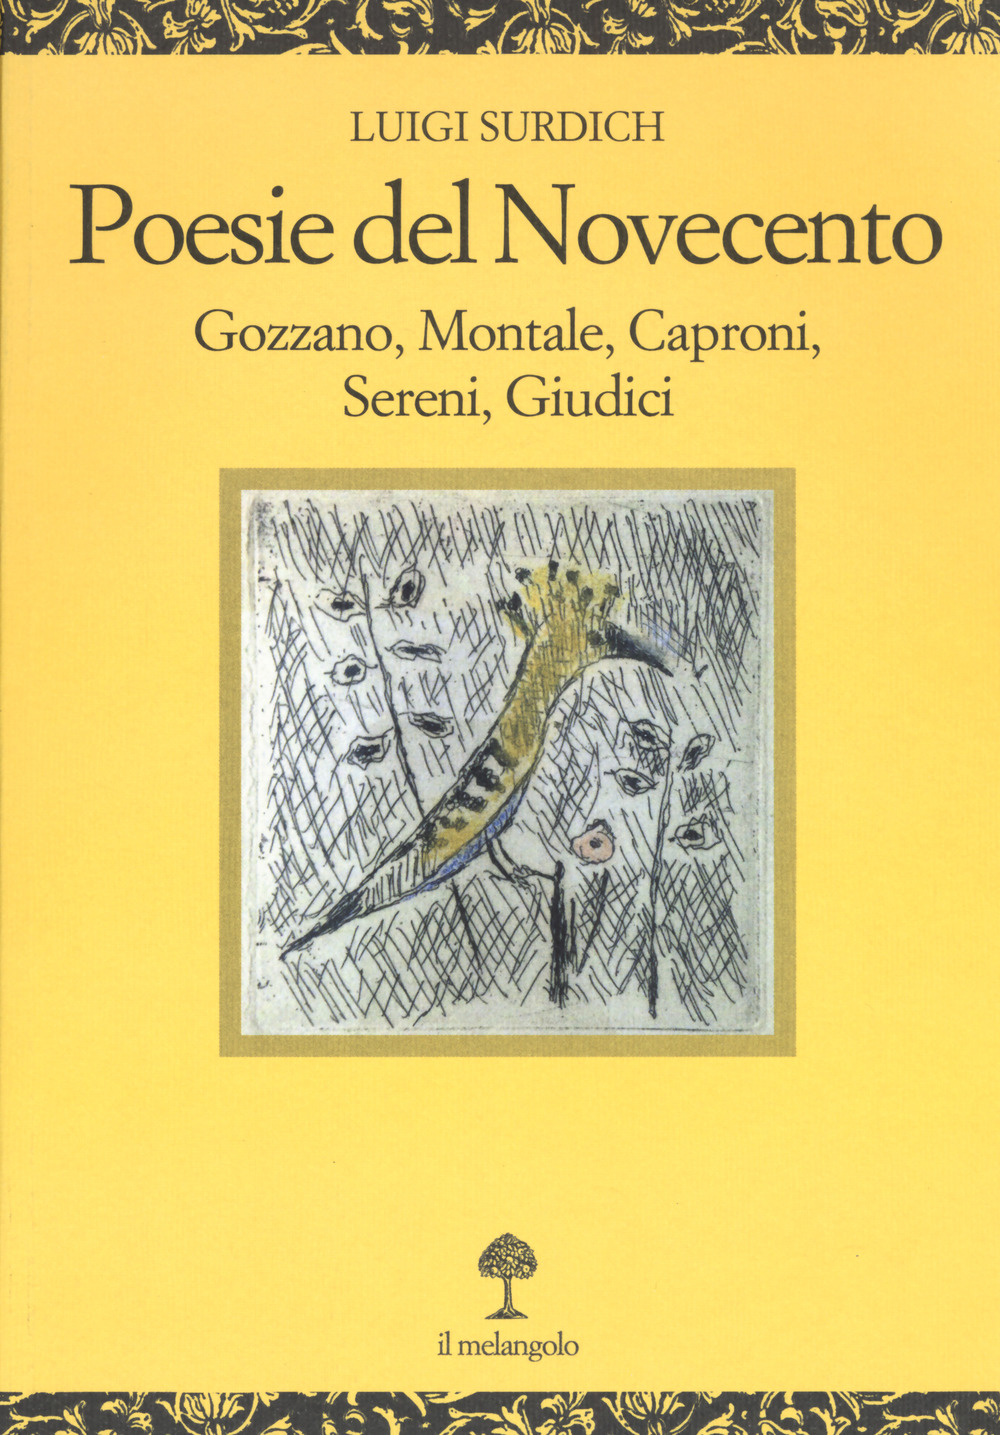 Poesie del Novecento. Gozzano, Montale, Caproni, Sereni, Giudici